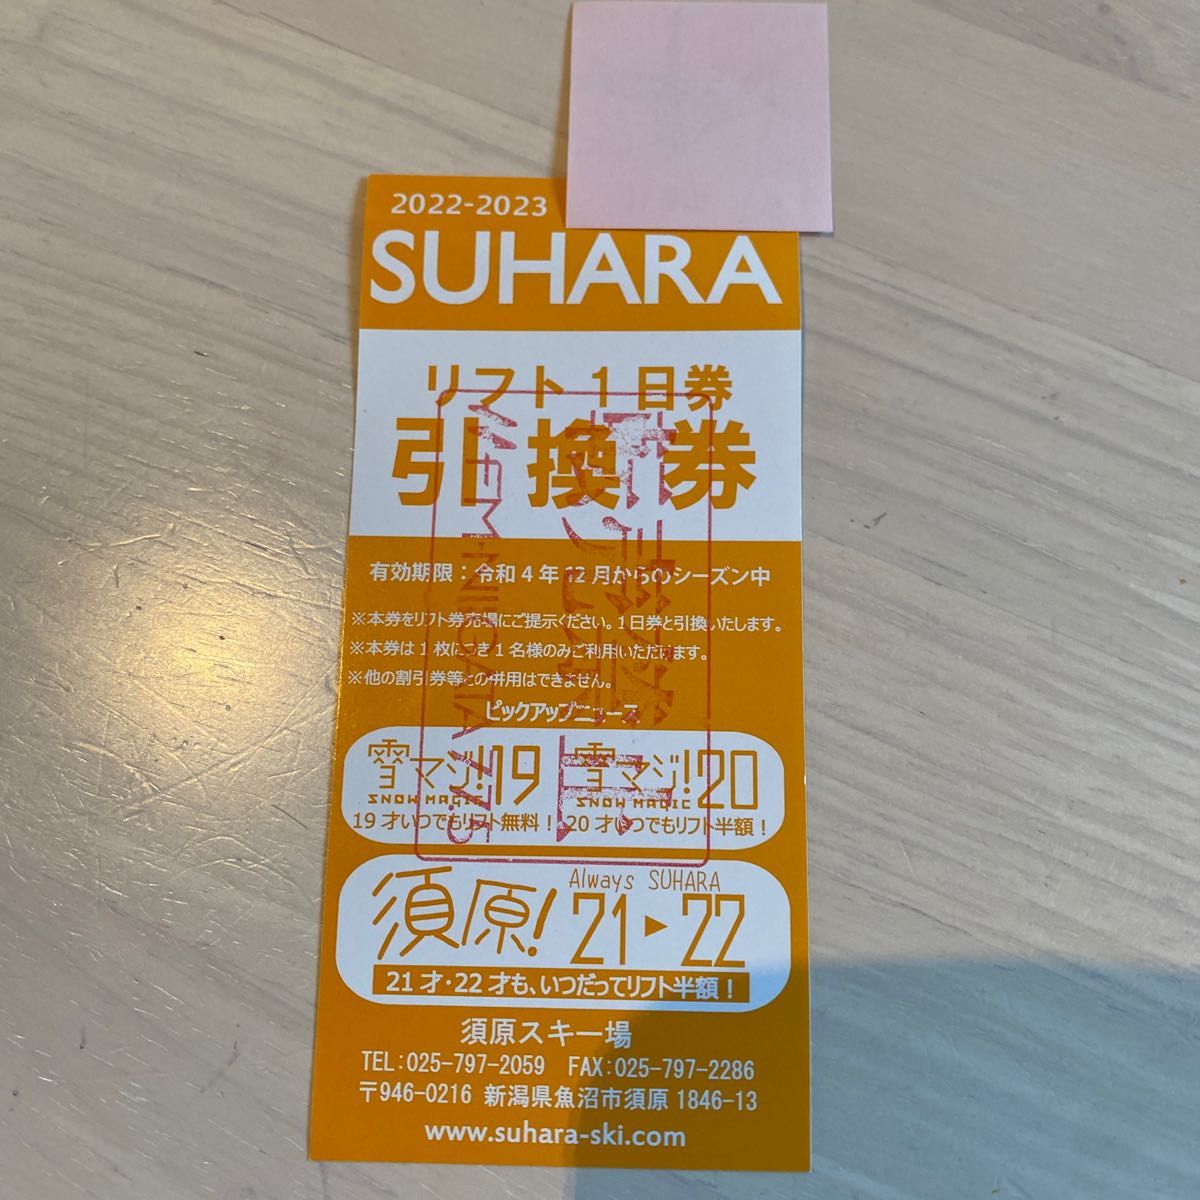 リフト券 1日券 SUHARA 須原 スキー場 引換券 2023-2024 - スキー場